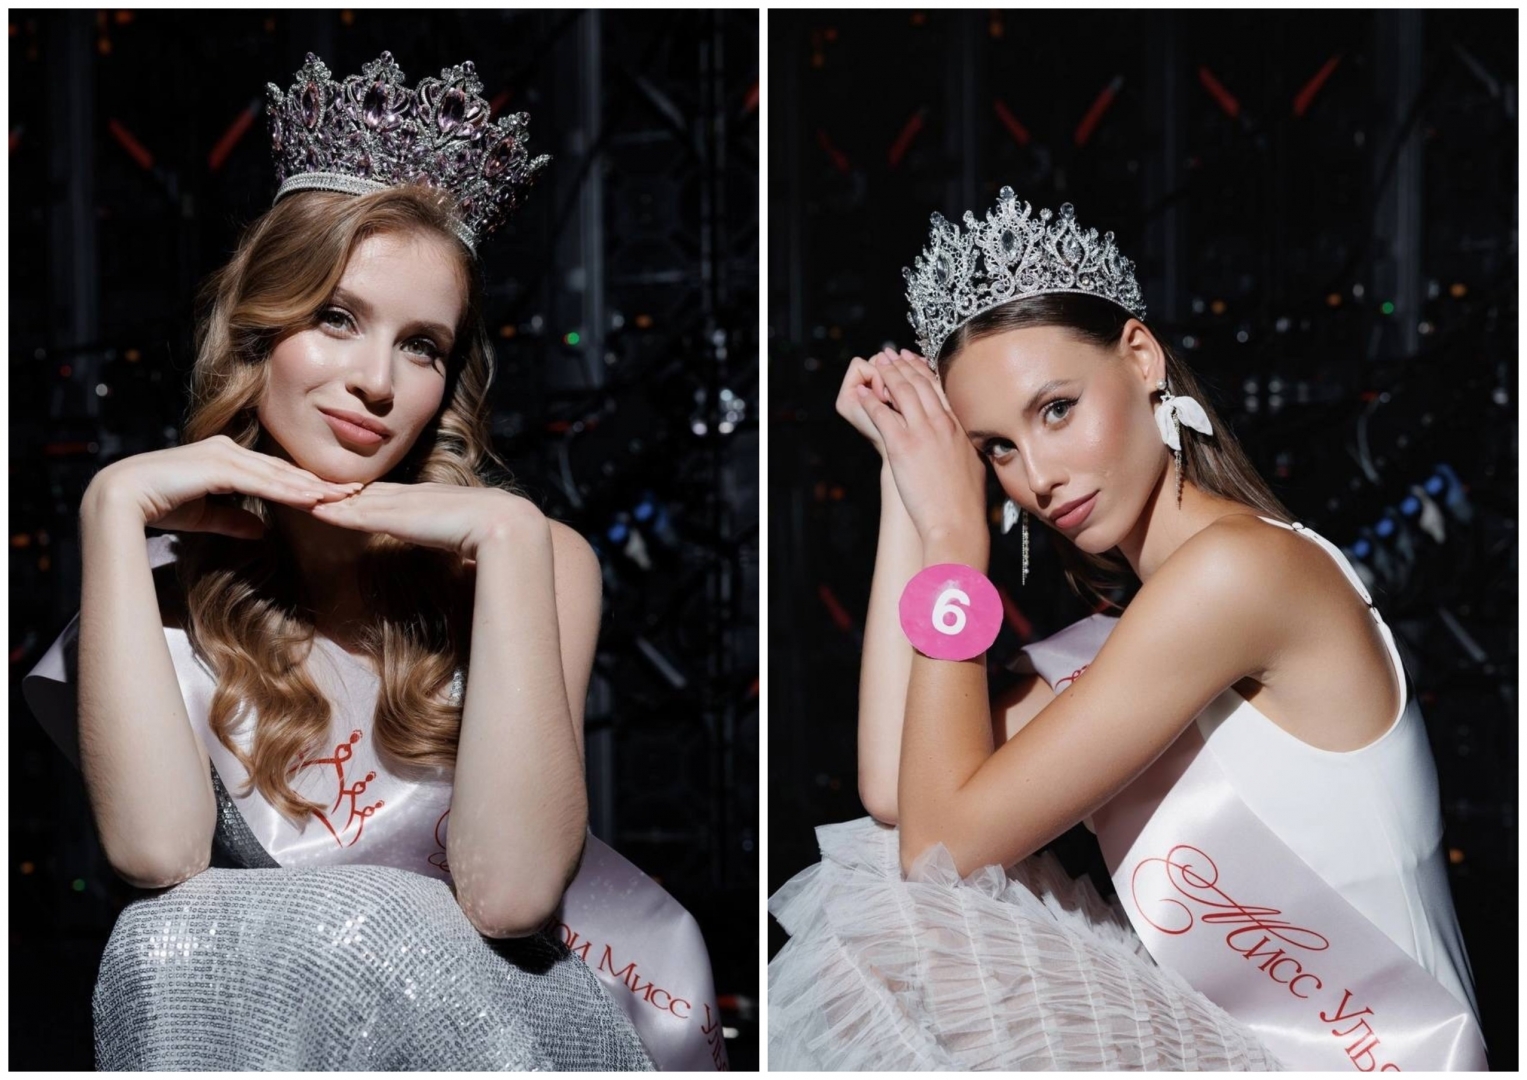 Сергей Зверев оценит ульяновских красоток на конкурсе «Мисс Туризм»